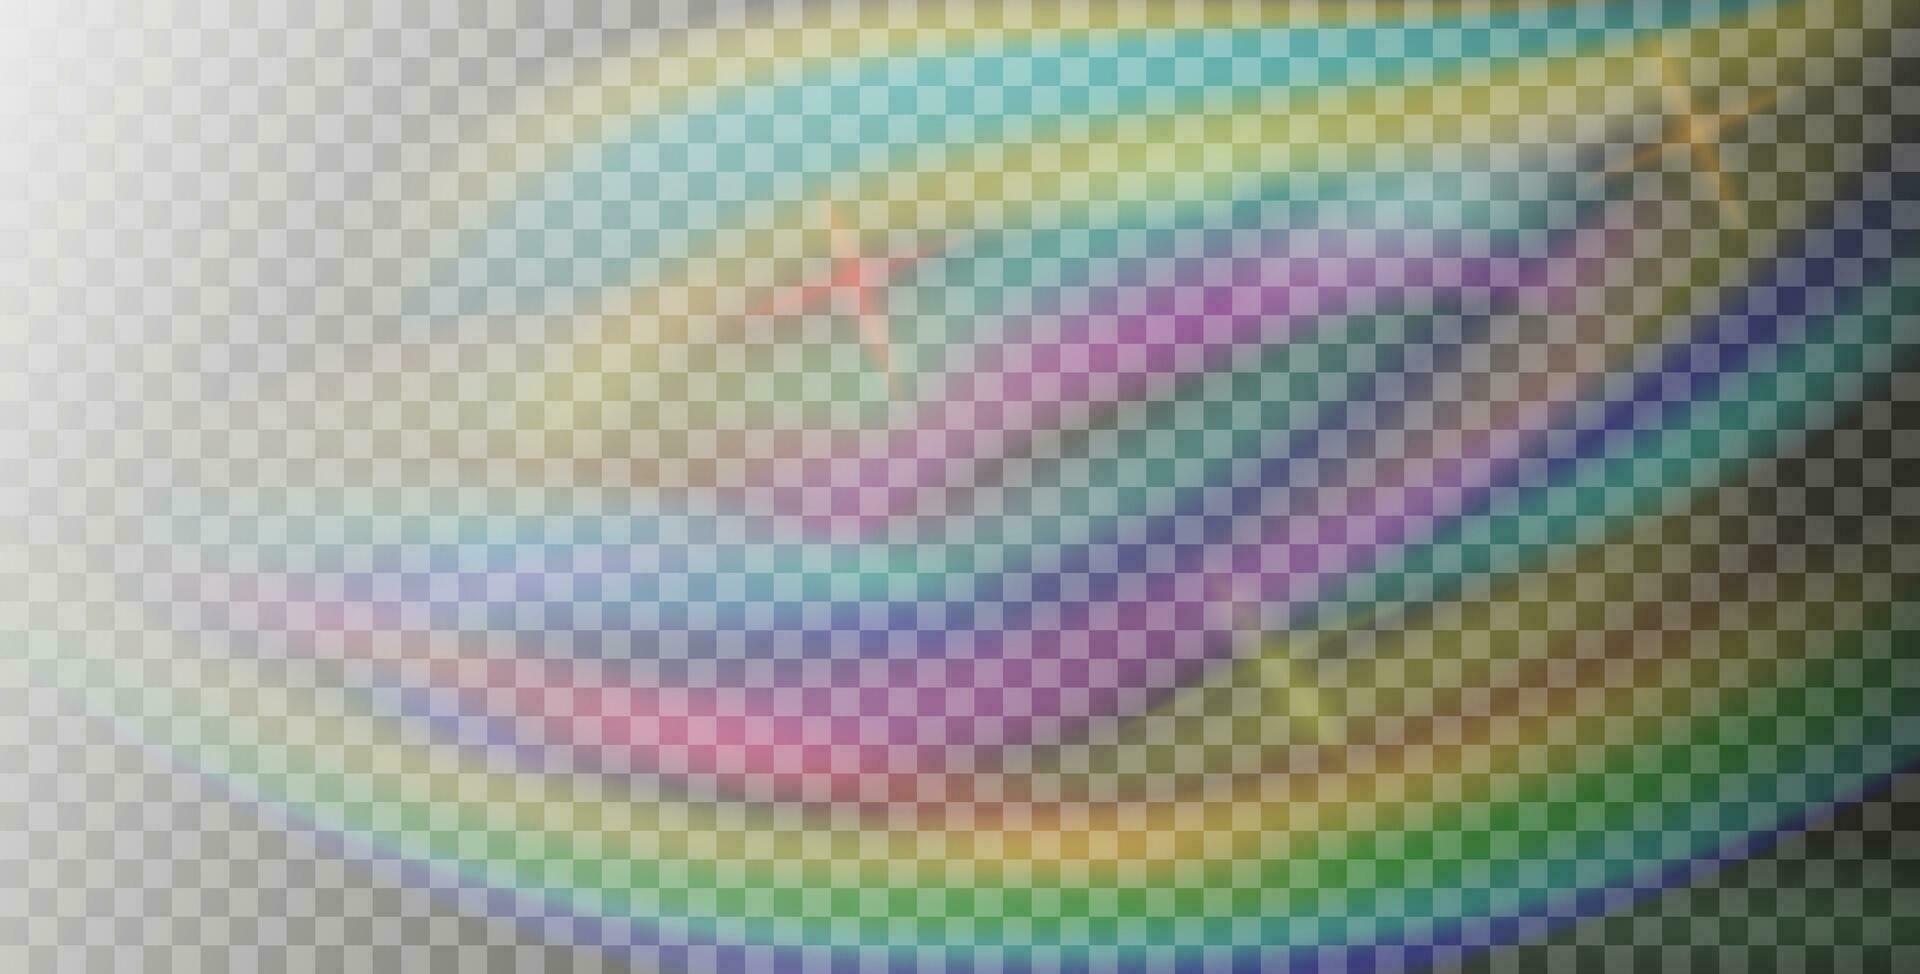 regnbåge färgrik ljus prisma effekt, bakgrund. hologram reflexion, kristall blossa läcka skugga täcka över. vektor illustration av abstrakt suddig regnbågsskimrande ljus bakgrund.